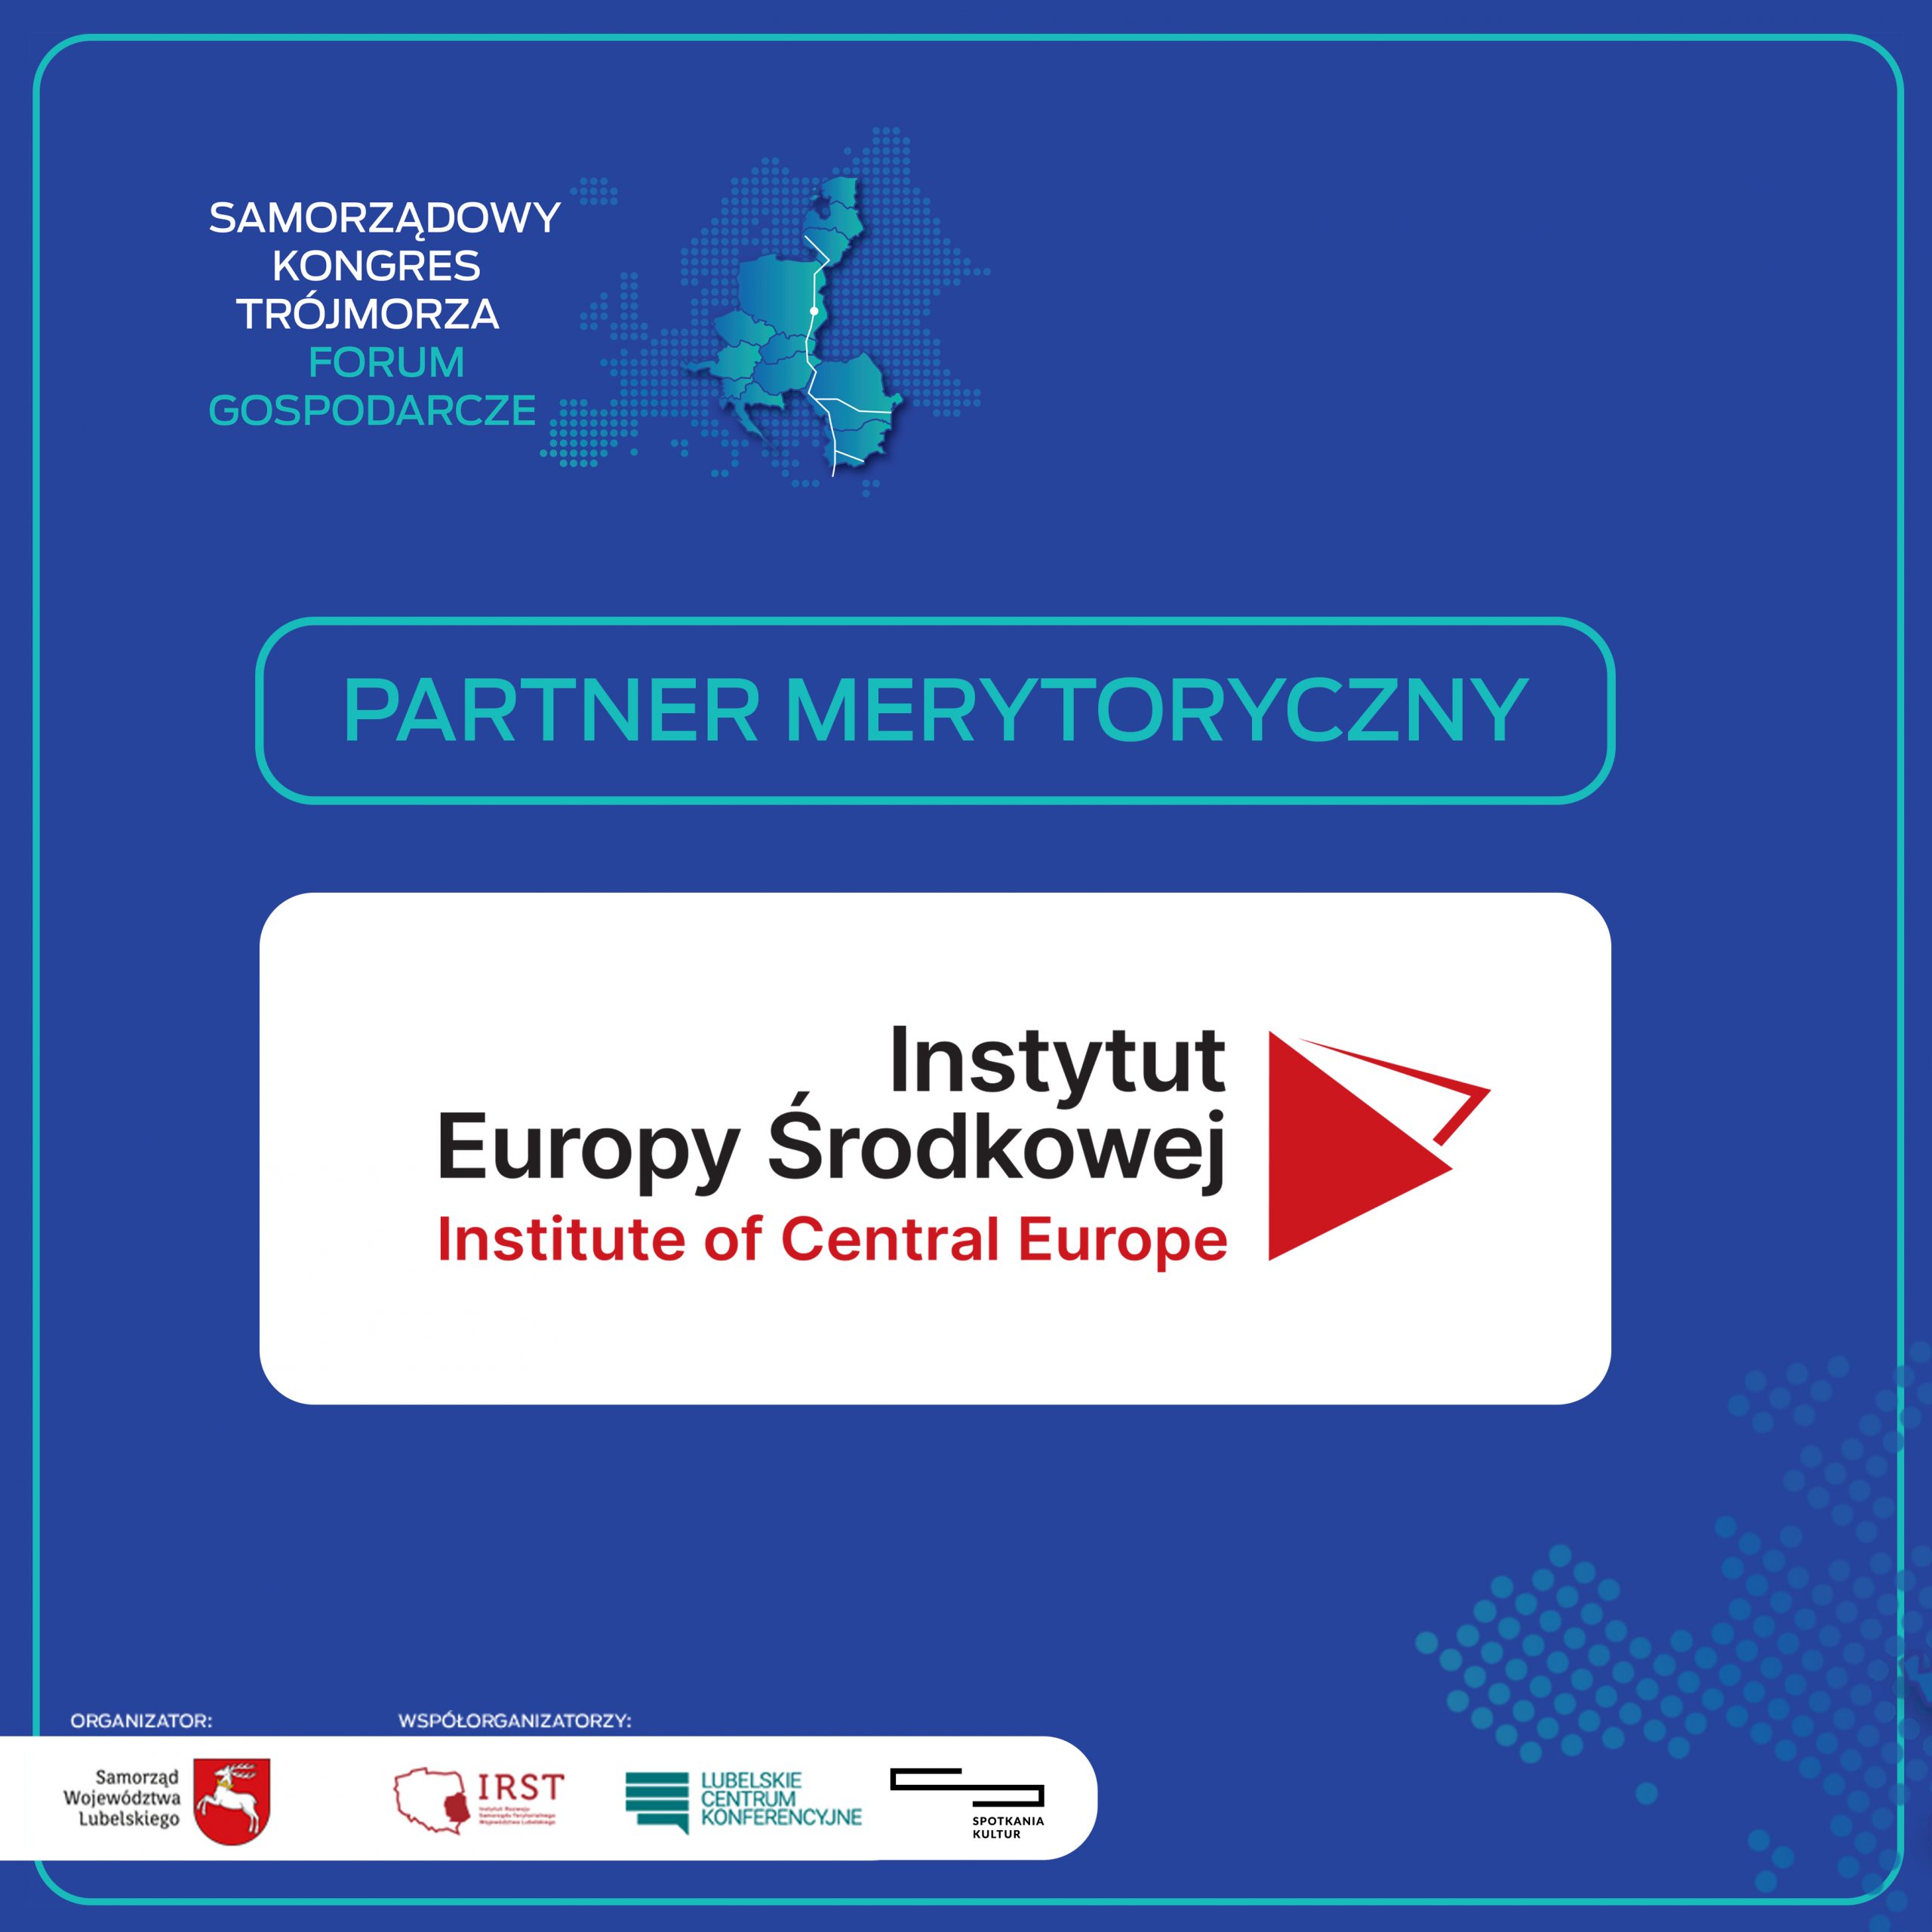 Partner Merytoryczny Samorządowego Kongresu Trójmorza: Instytut Europy Środkowej.